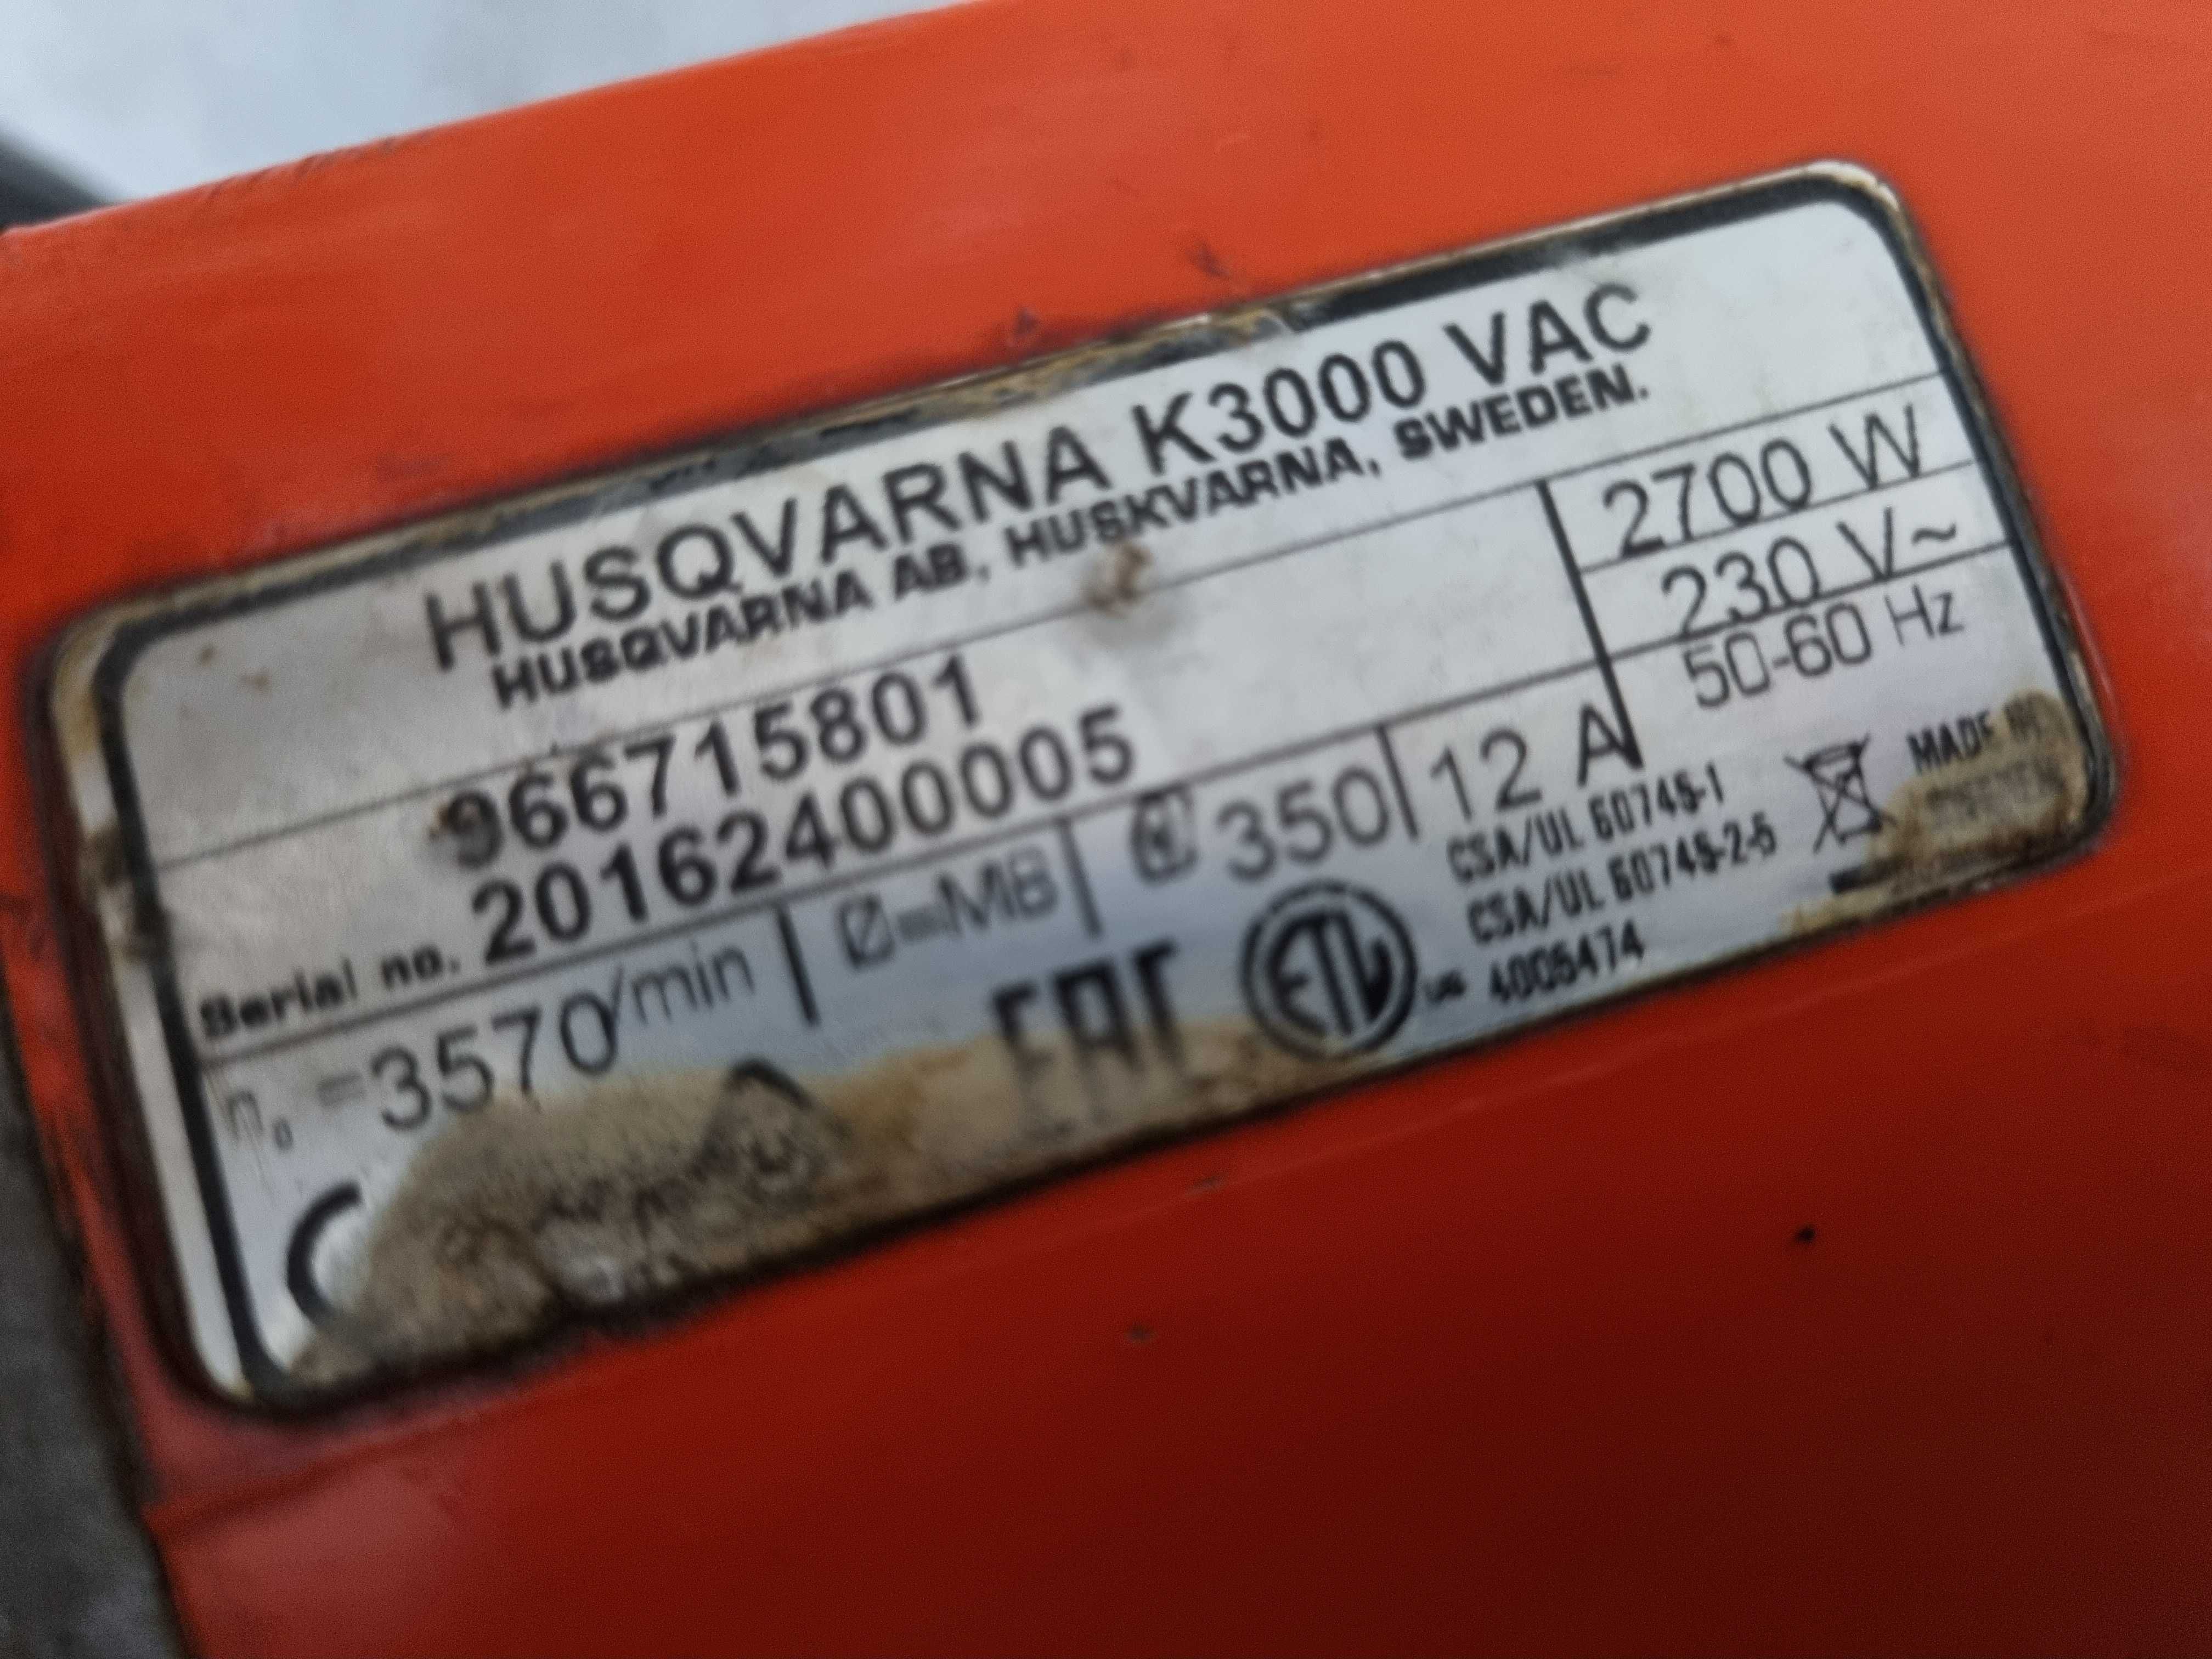 Przecinarka Piła wodna kostka cegła metal HusqvarnaK3000 zNorwegi2016r